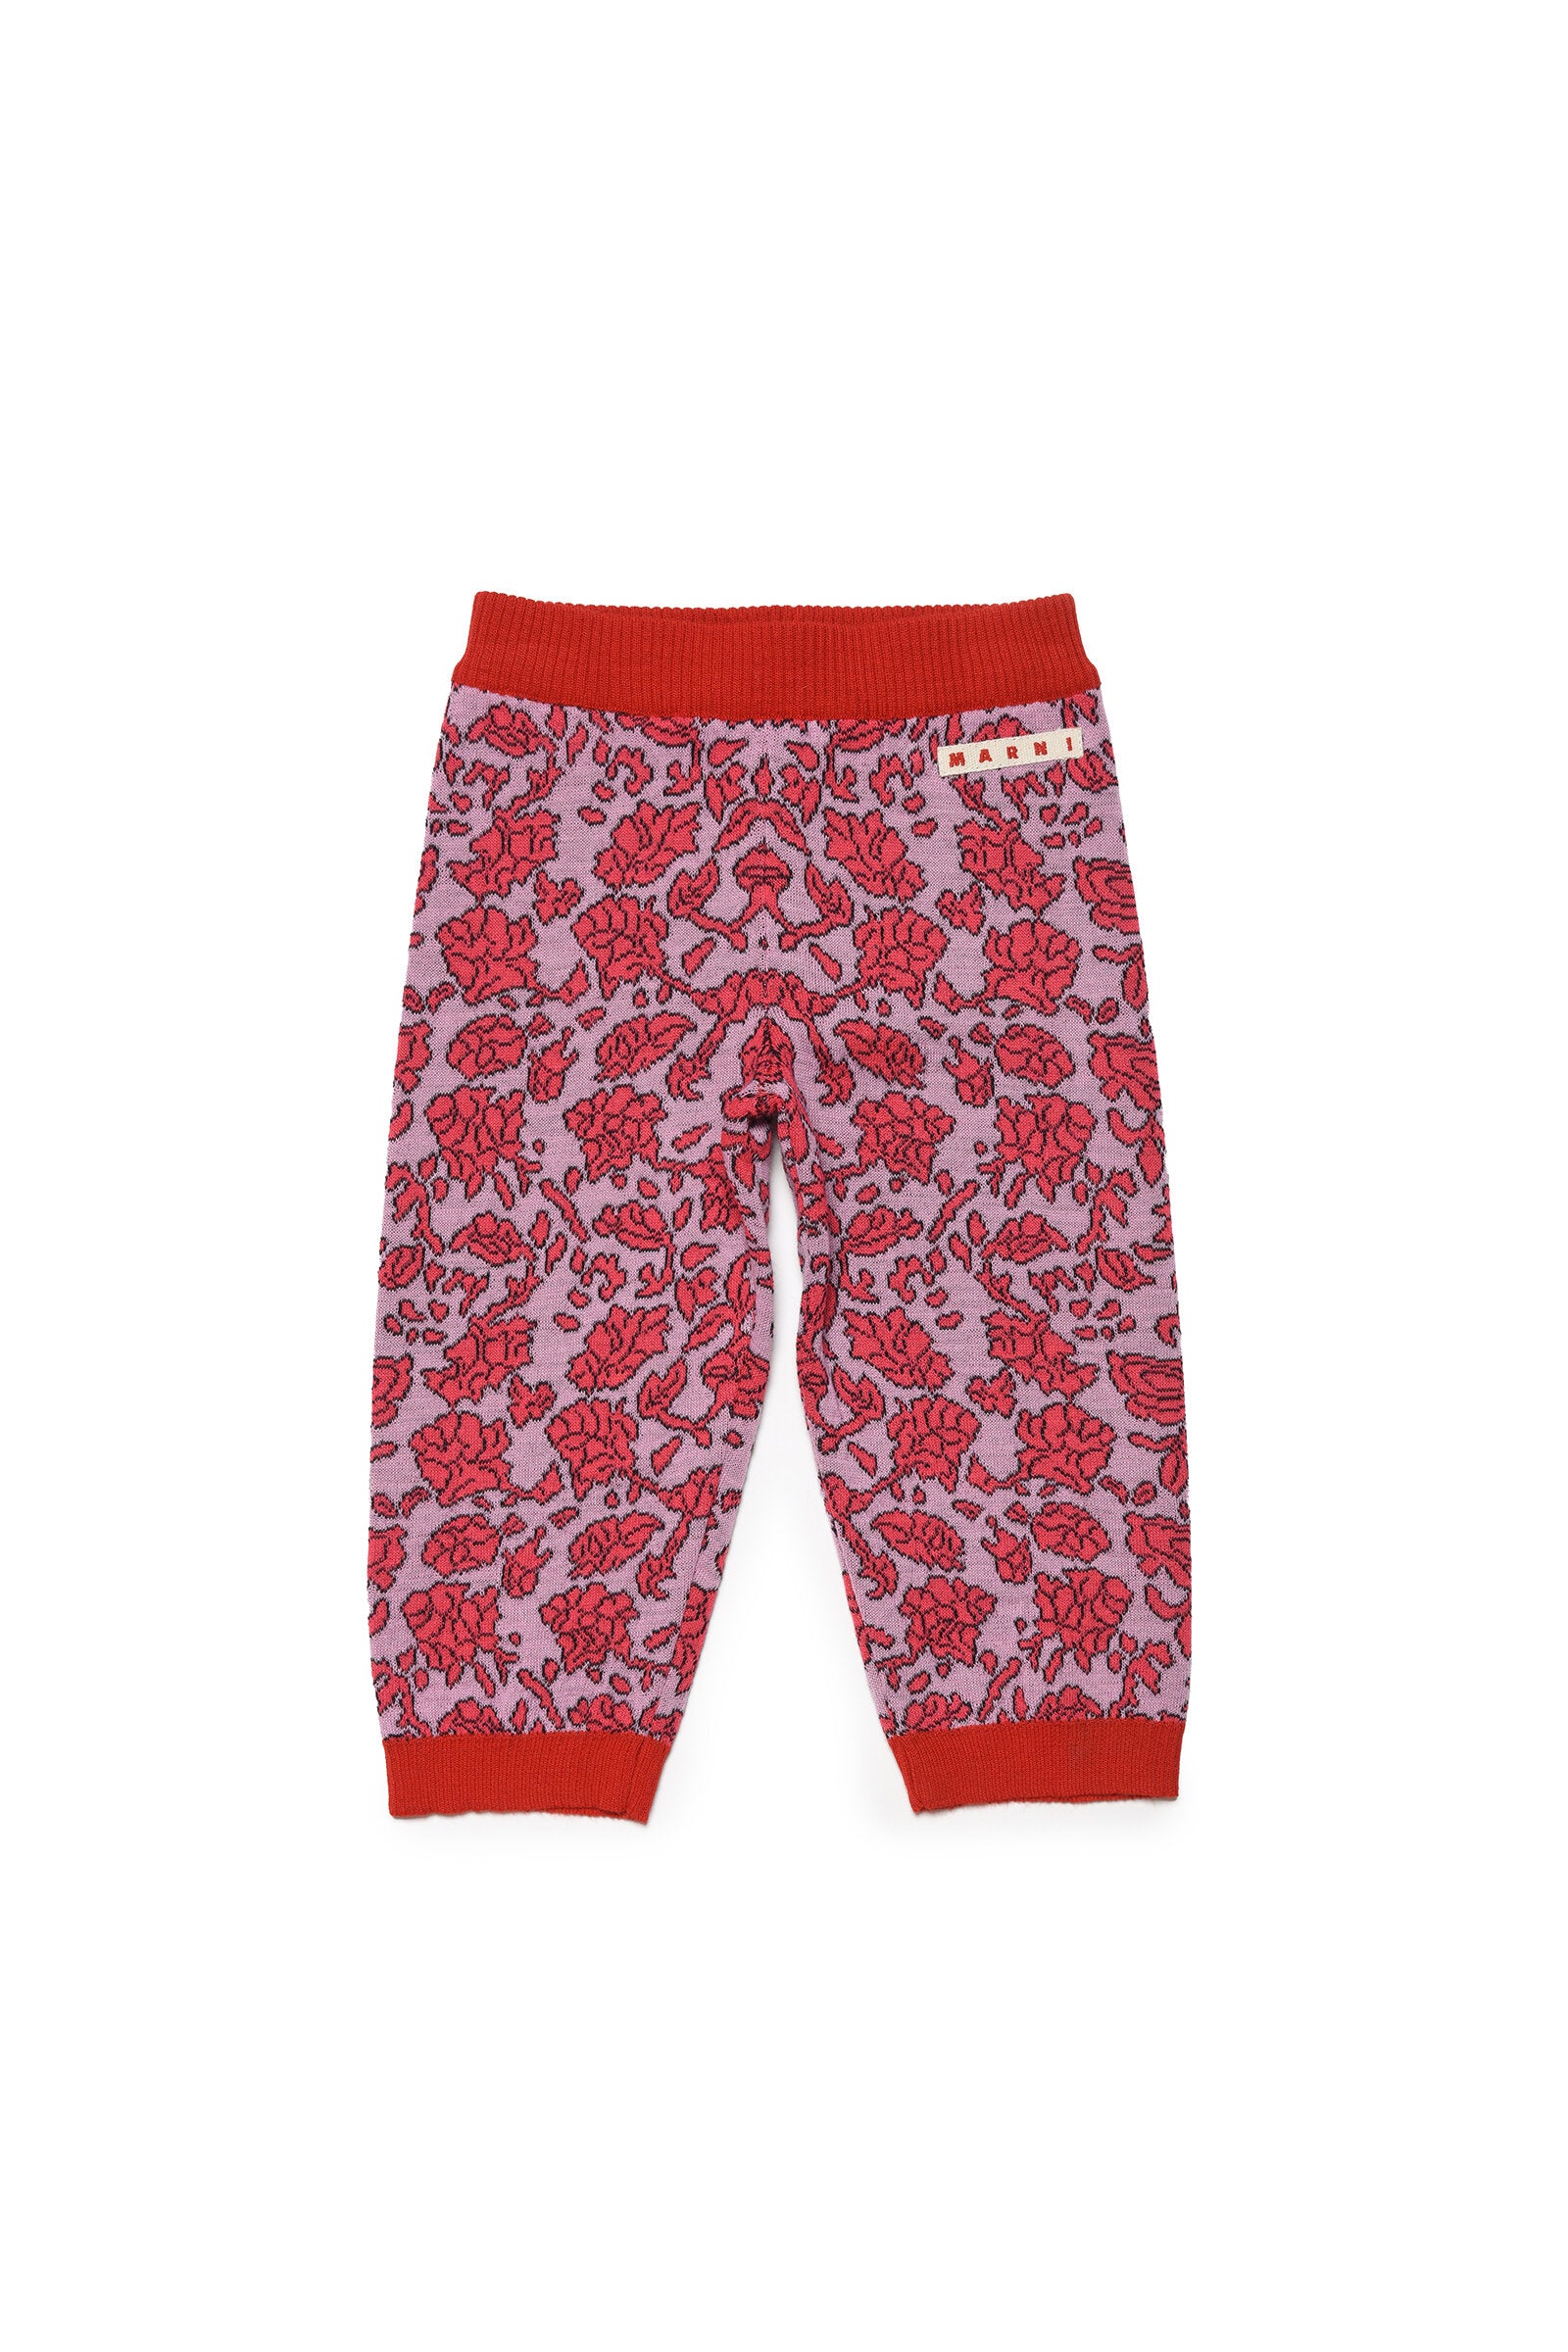 Pantalones deportivos de mezcla de lana con patrón floral integral